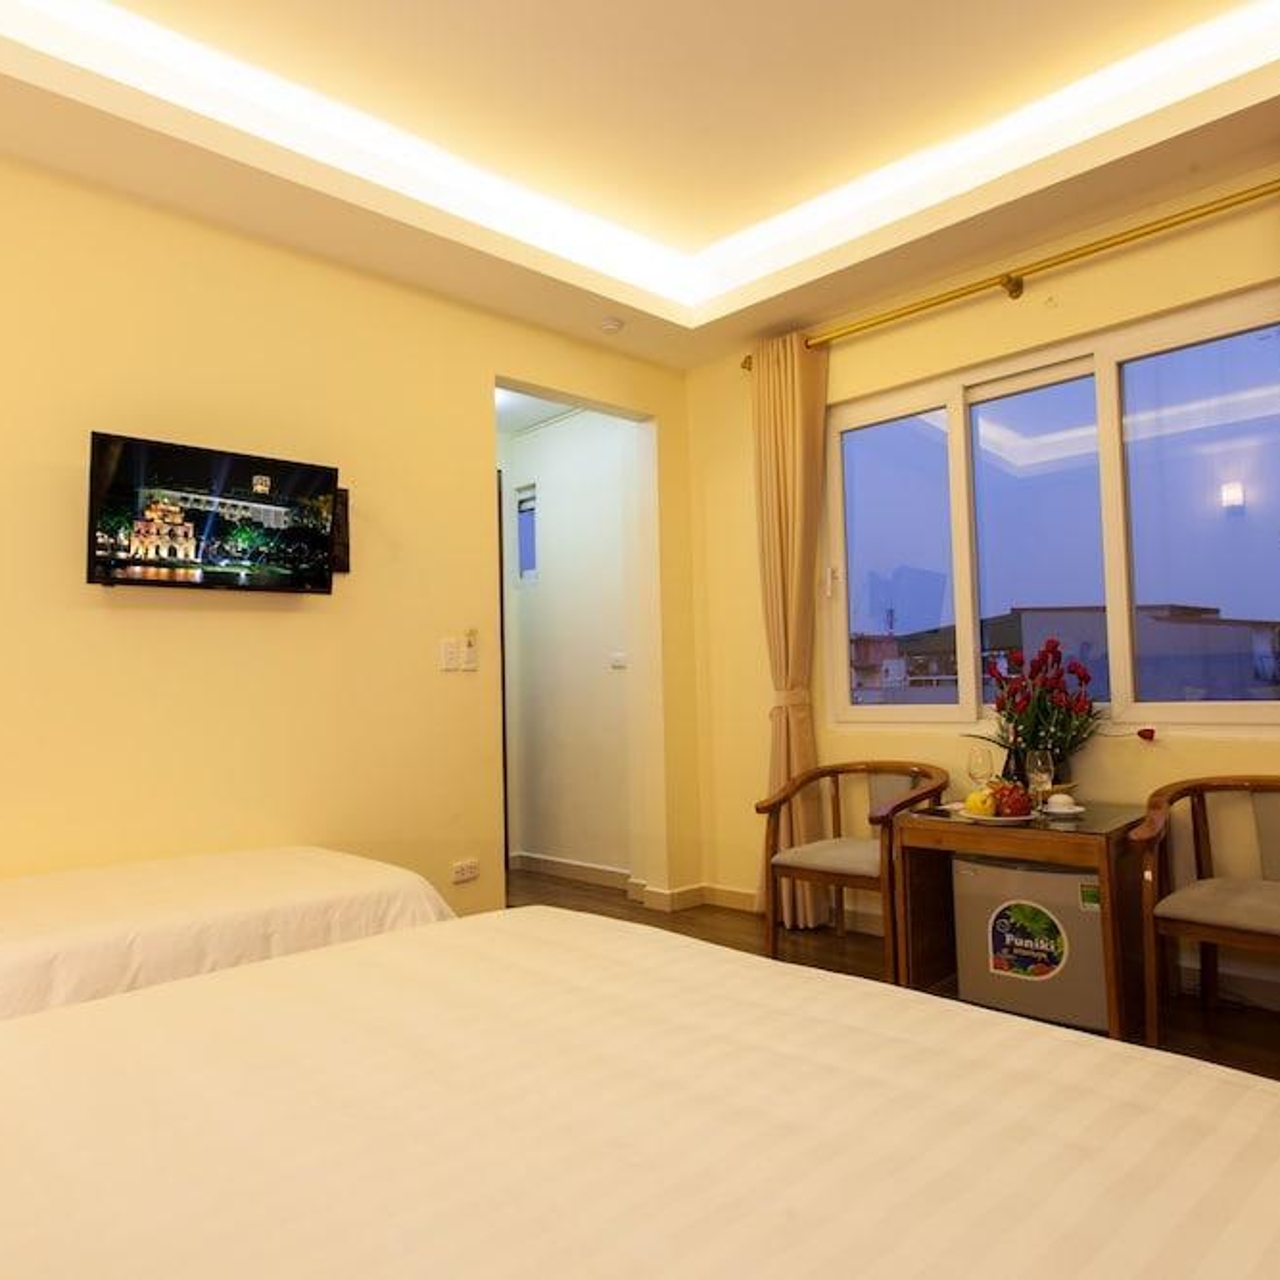 hykleri Sjældent verden Queen Light Hotel - 3 HRS star hotel in Hanoi (Ha Noi)